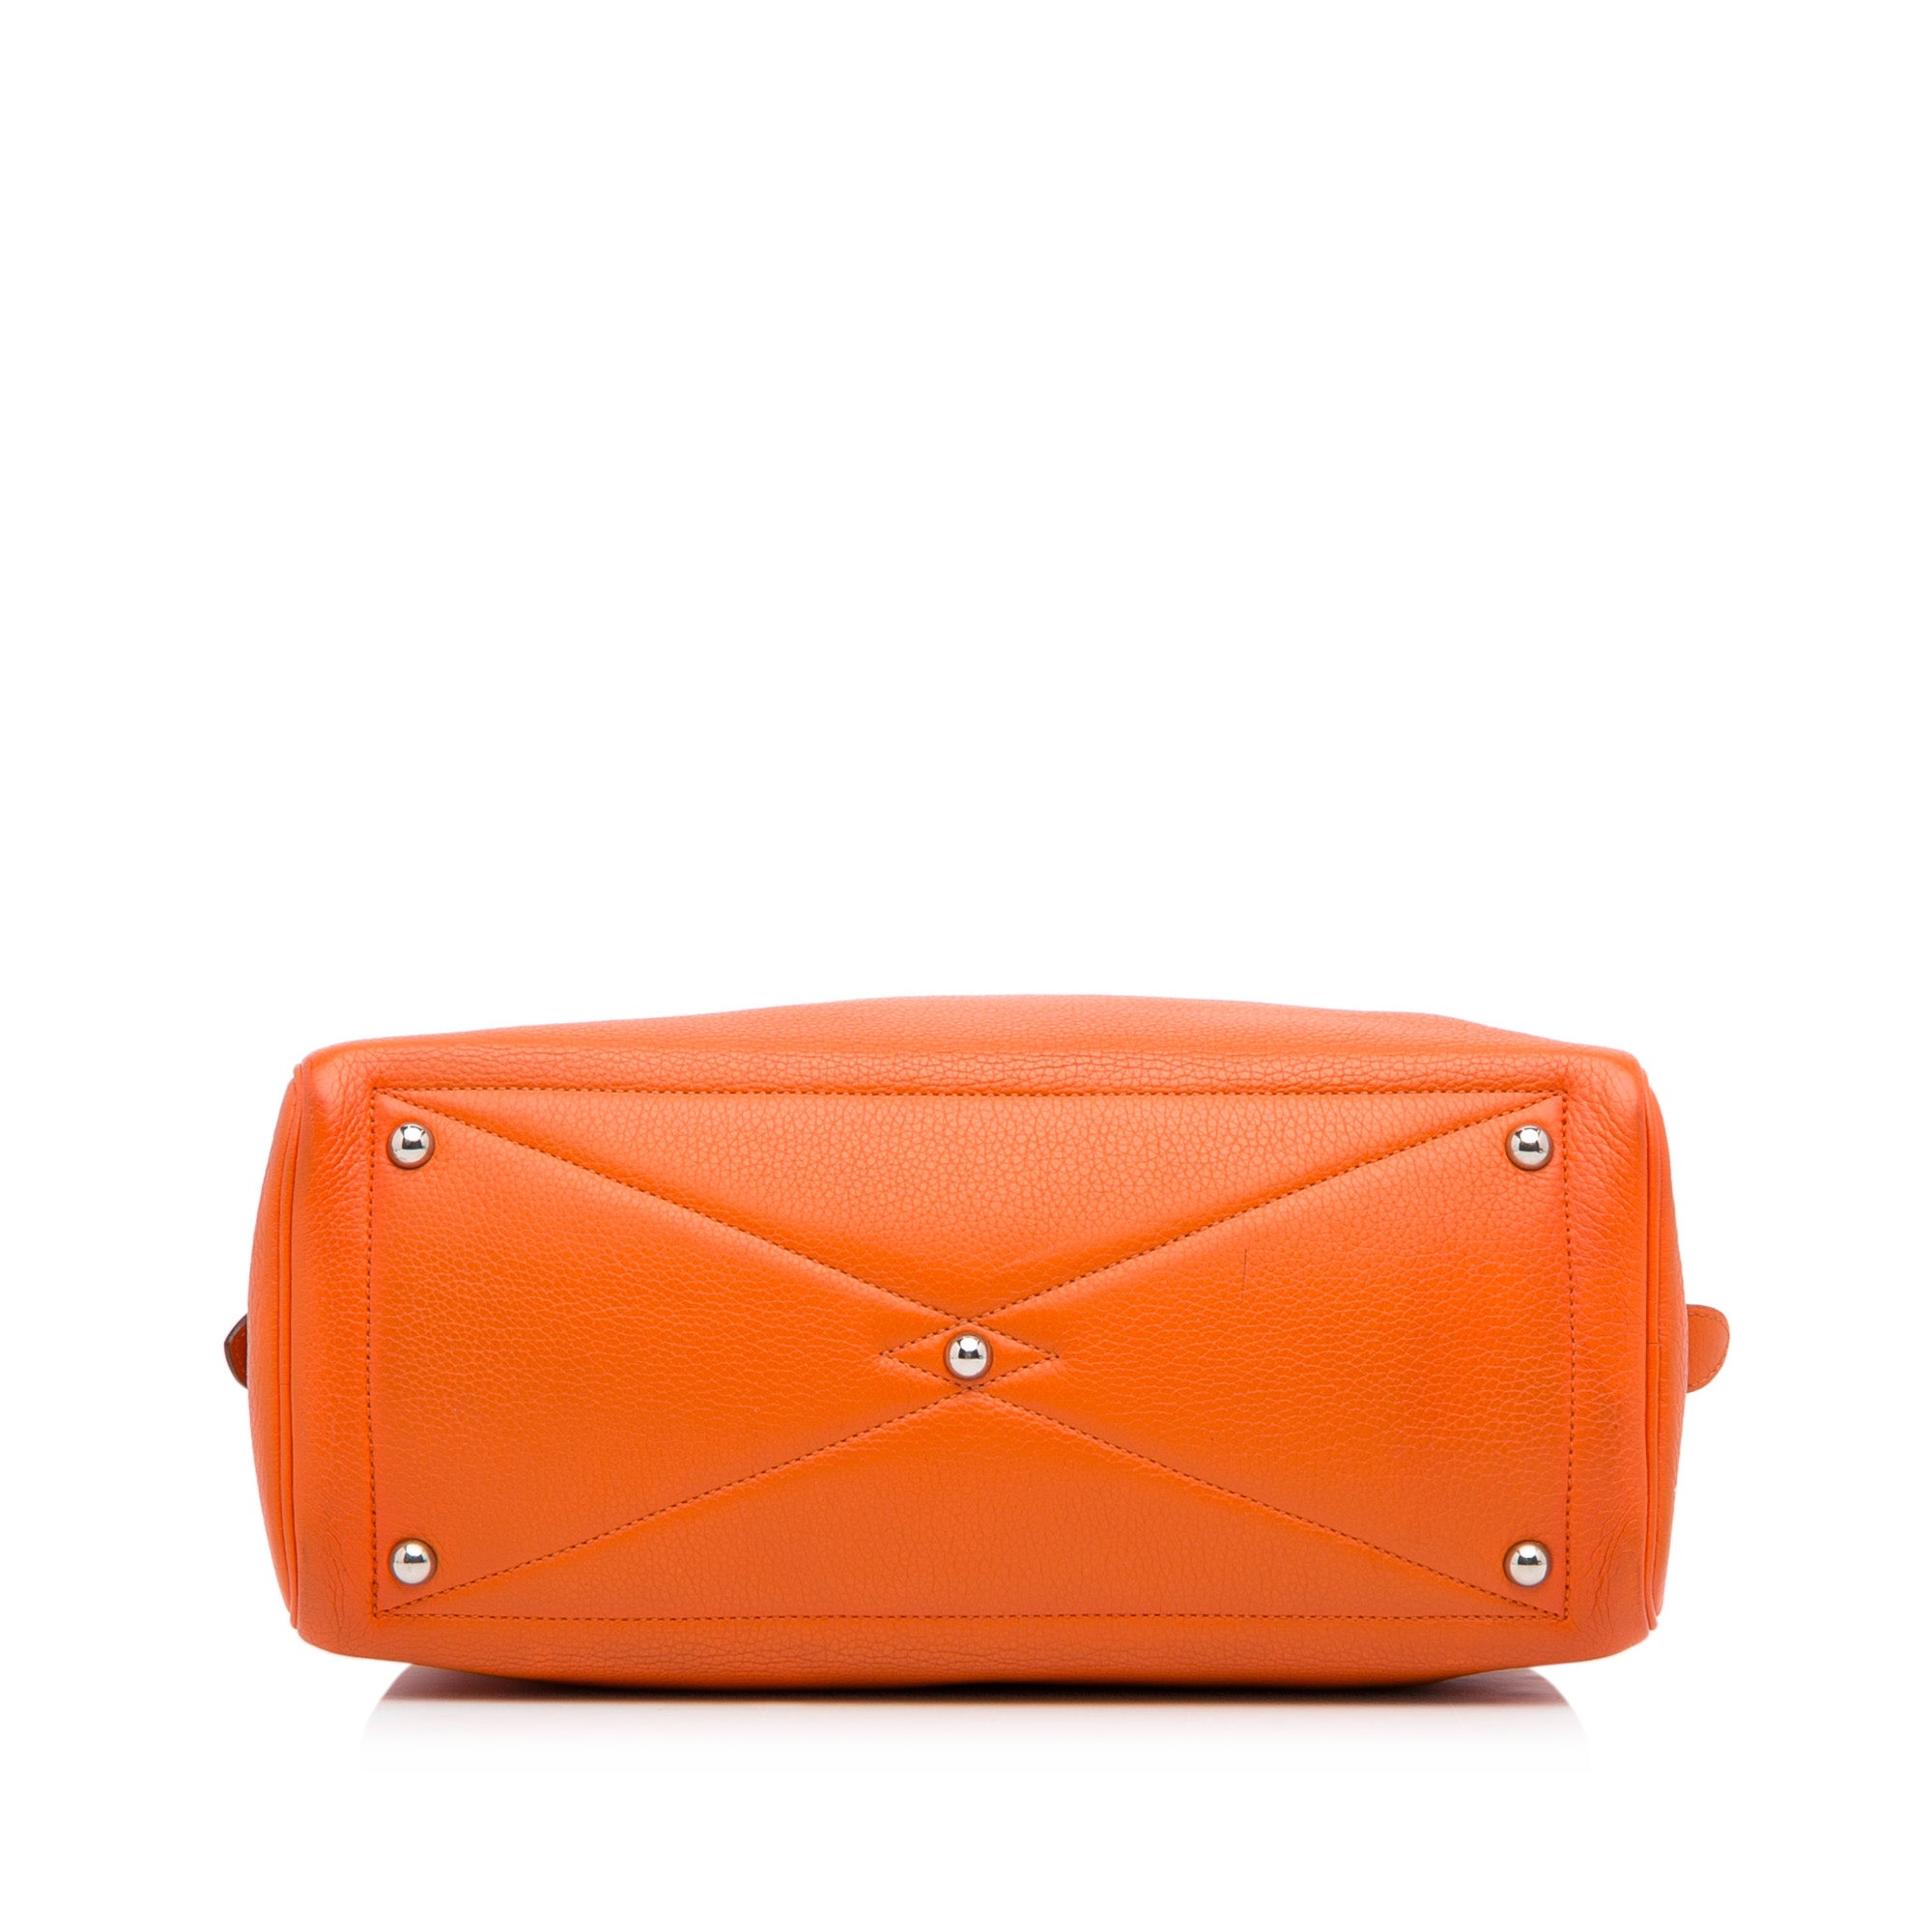 Orange Hermes Victoria Travel Bag – Designer Revival